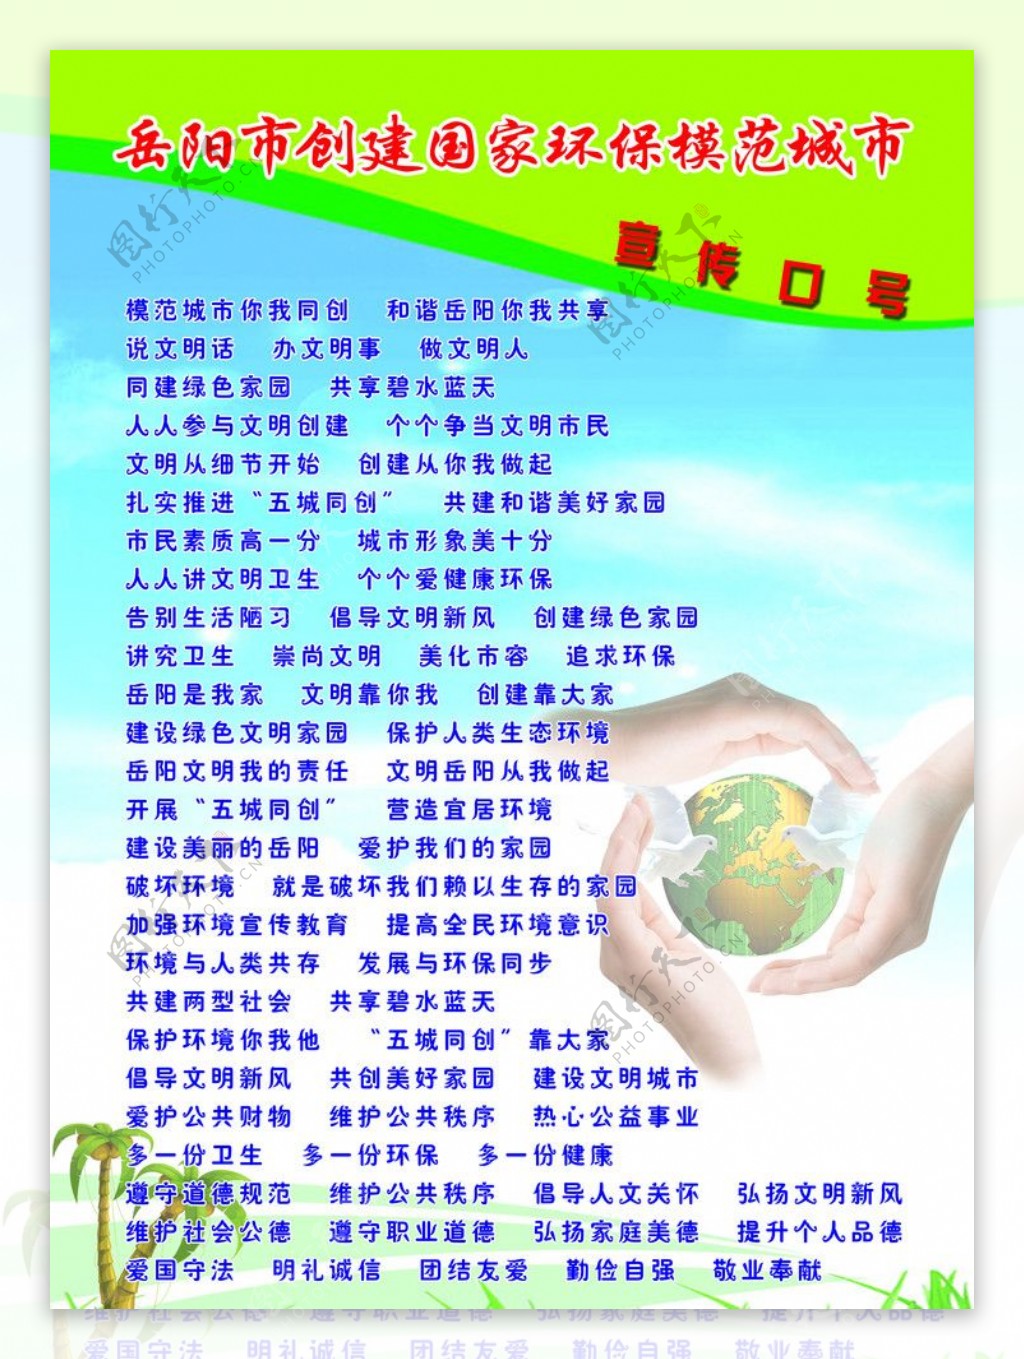 岳阳市创建国家环保模范城市宣传口号图片